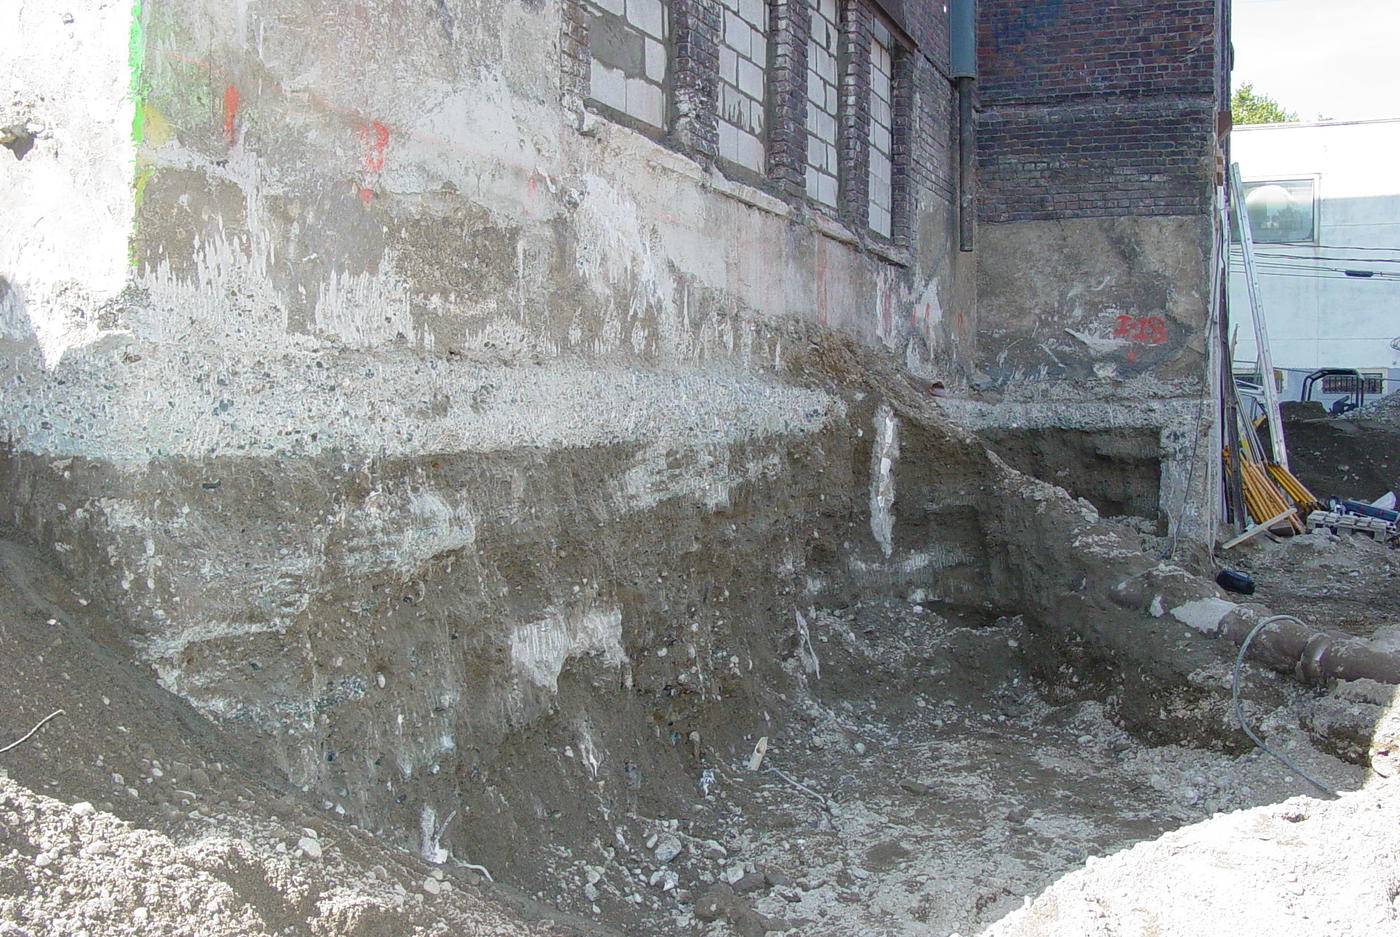 Northwest School excavation